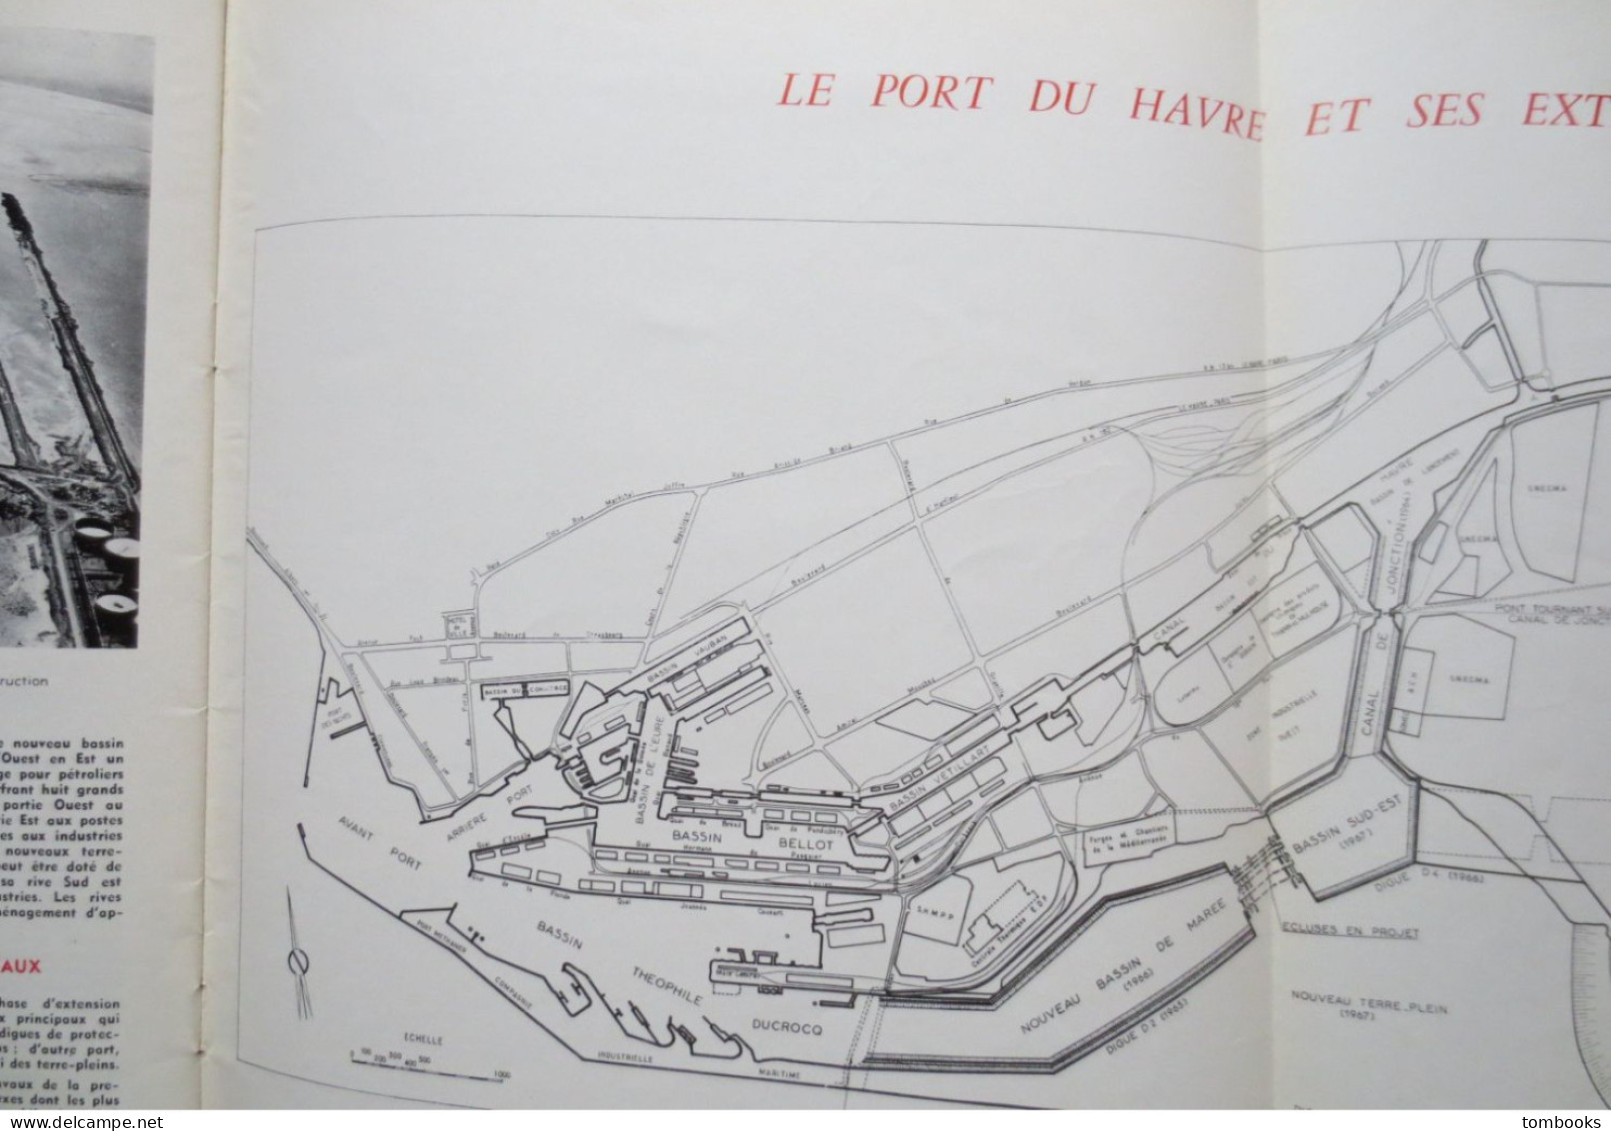 Le Havre - revue portuaire - Le Port du Havre Hier ,Aujourd'hui , Demain - 1967 avec plan dépliant - TBE -